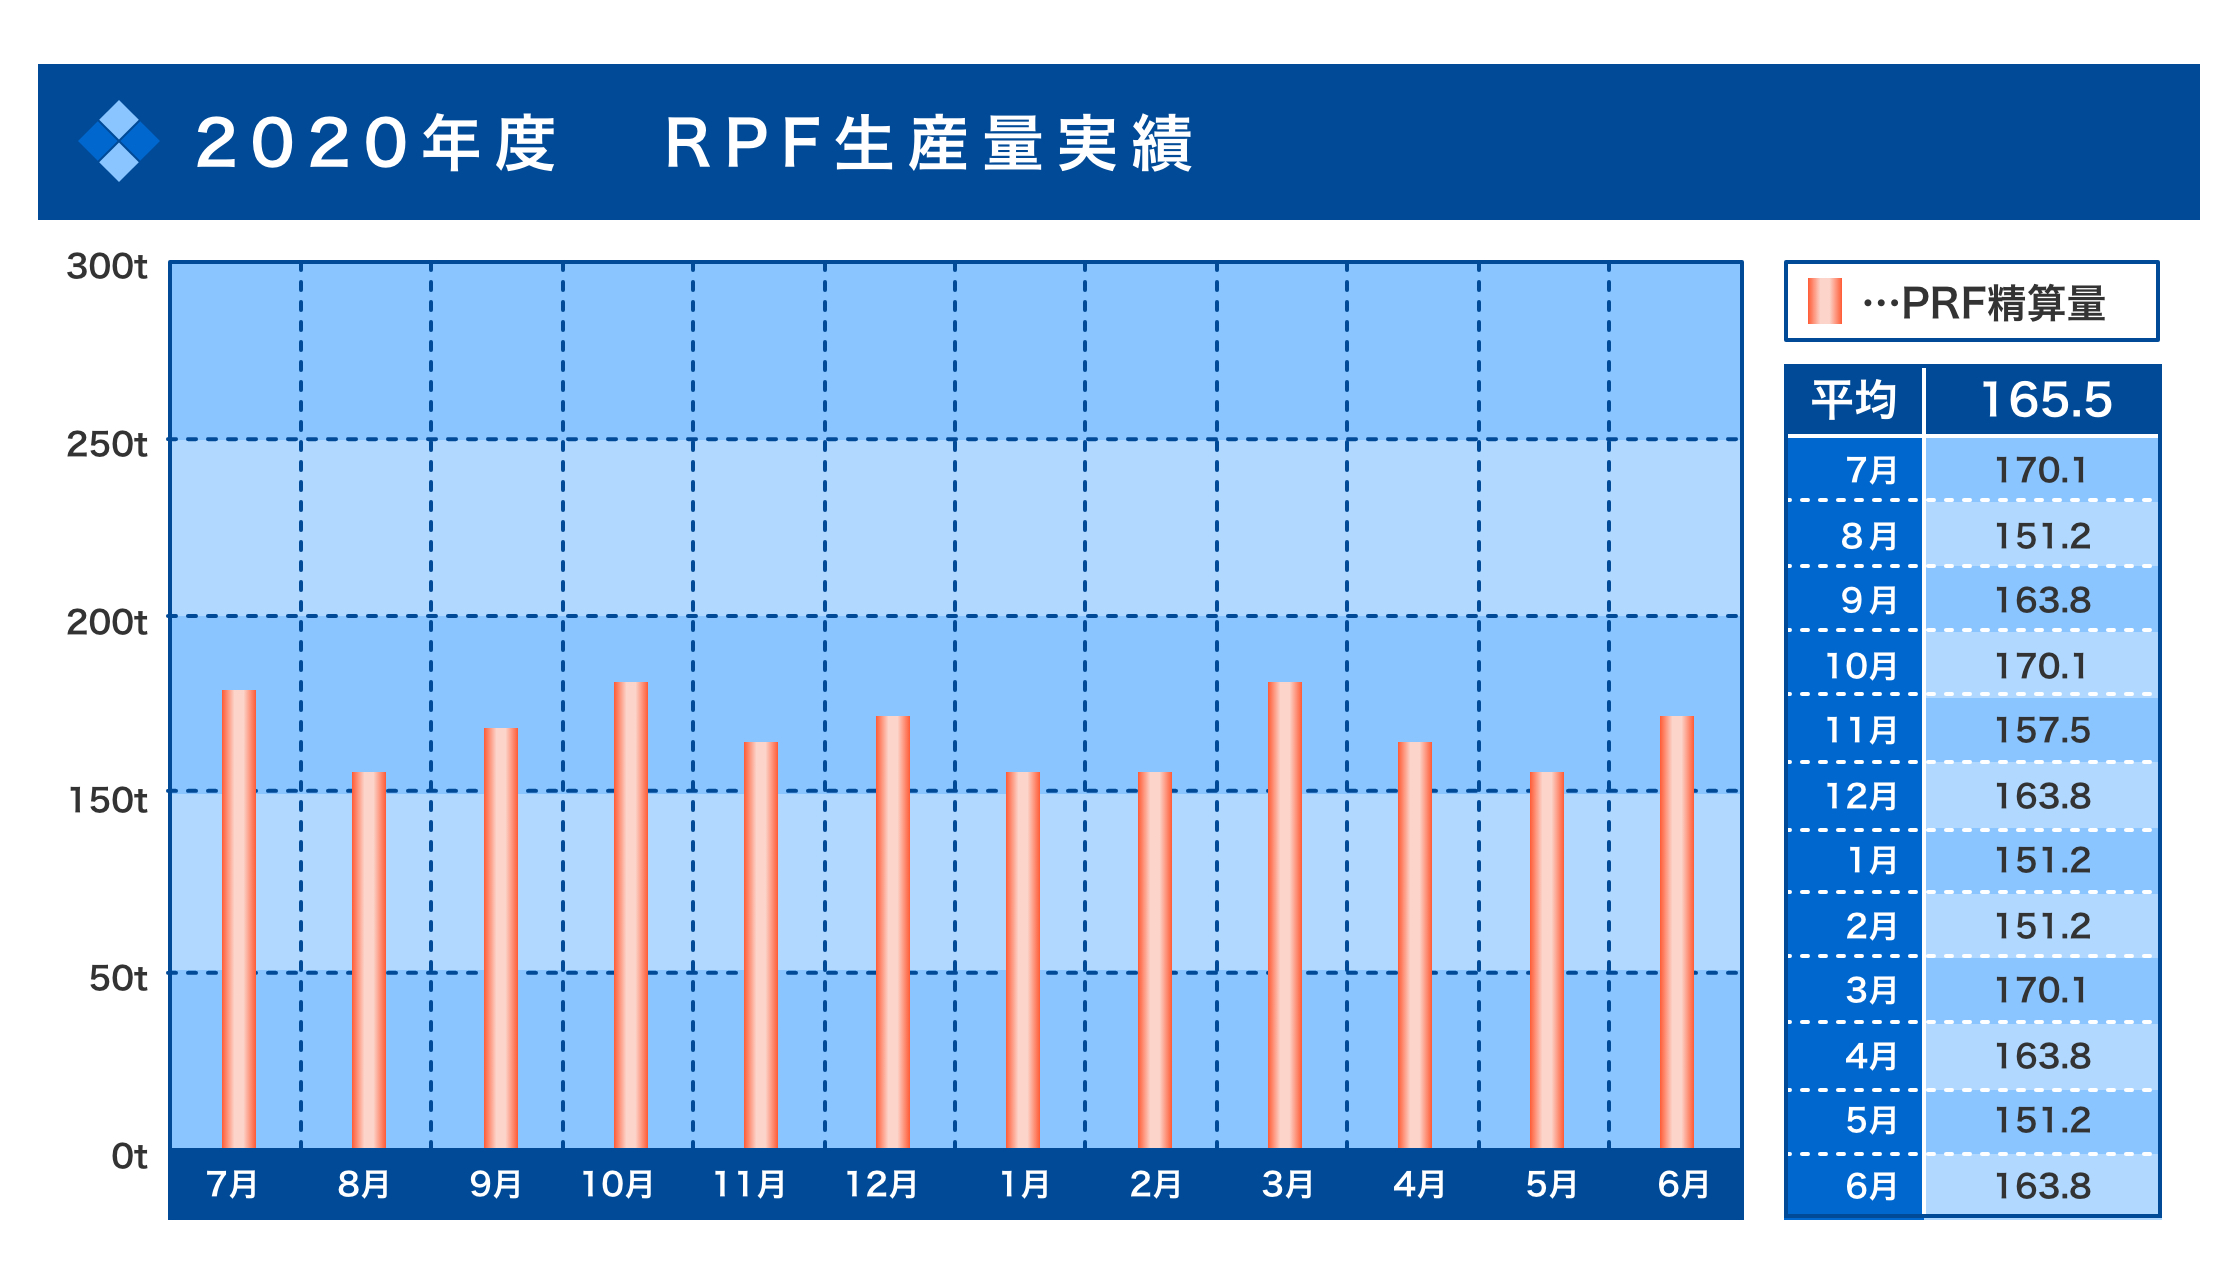 2020年度 RPF生産量実績